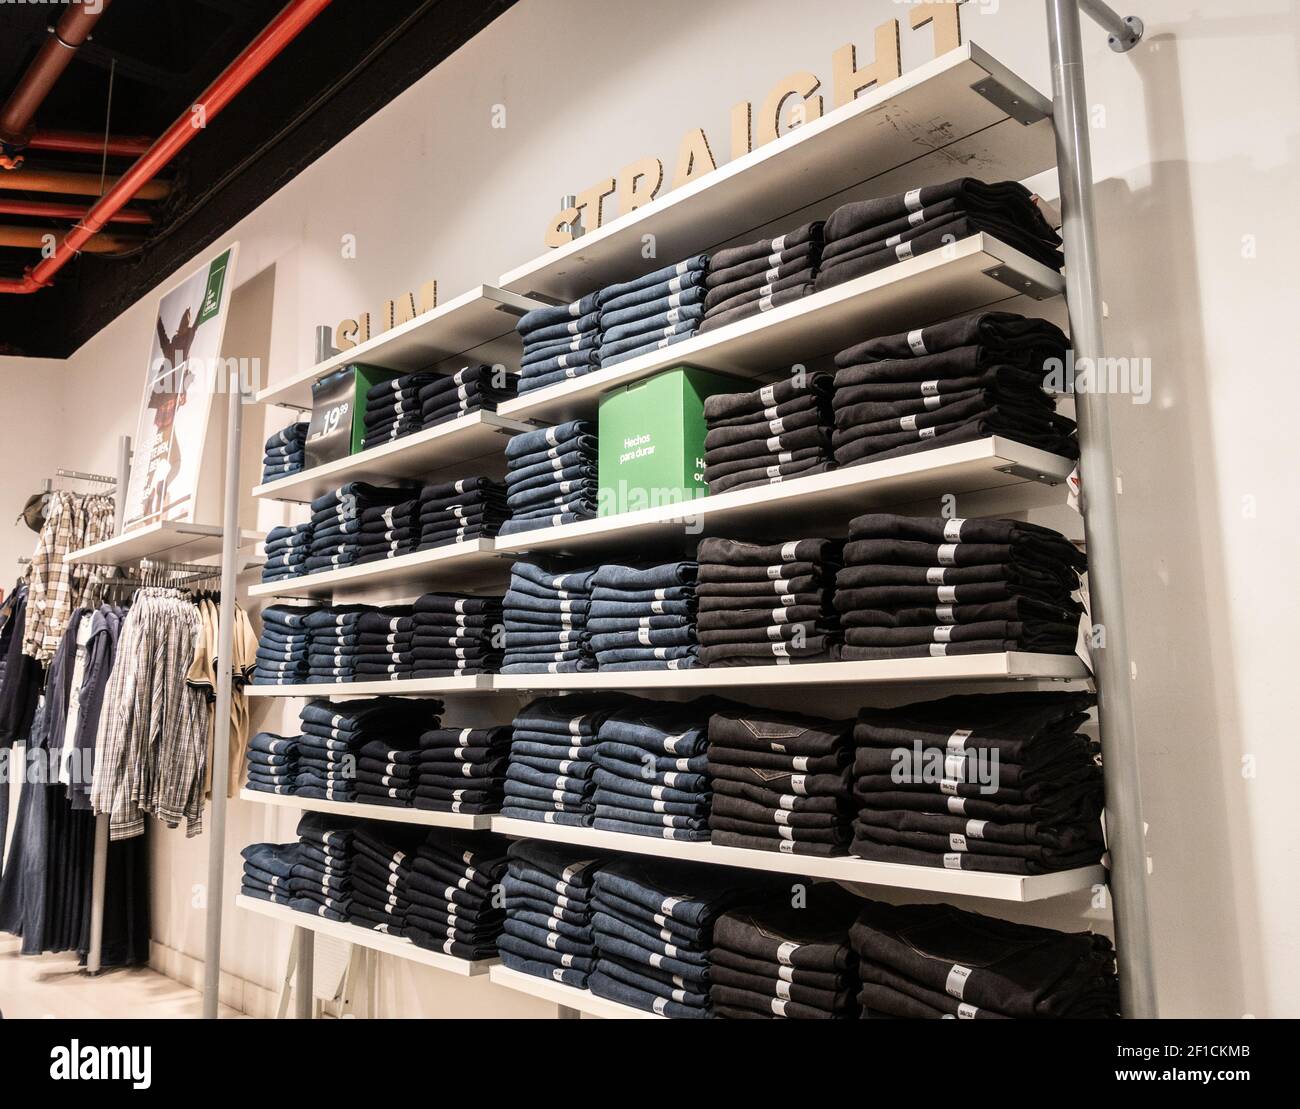 Denim Jeans Display im Bekleidungsgeschäft. Stockfoto